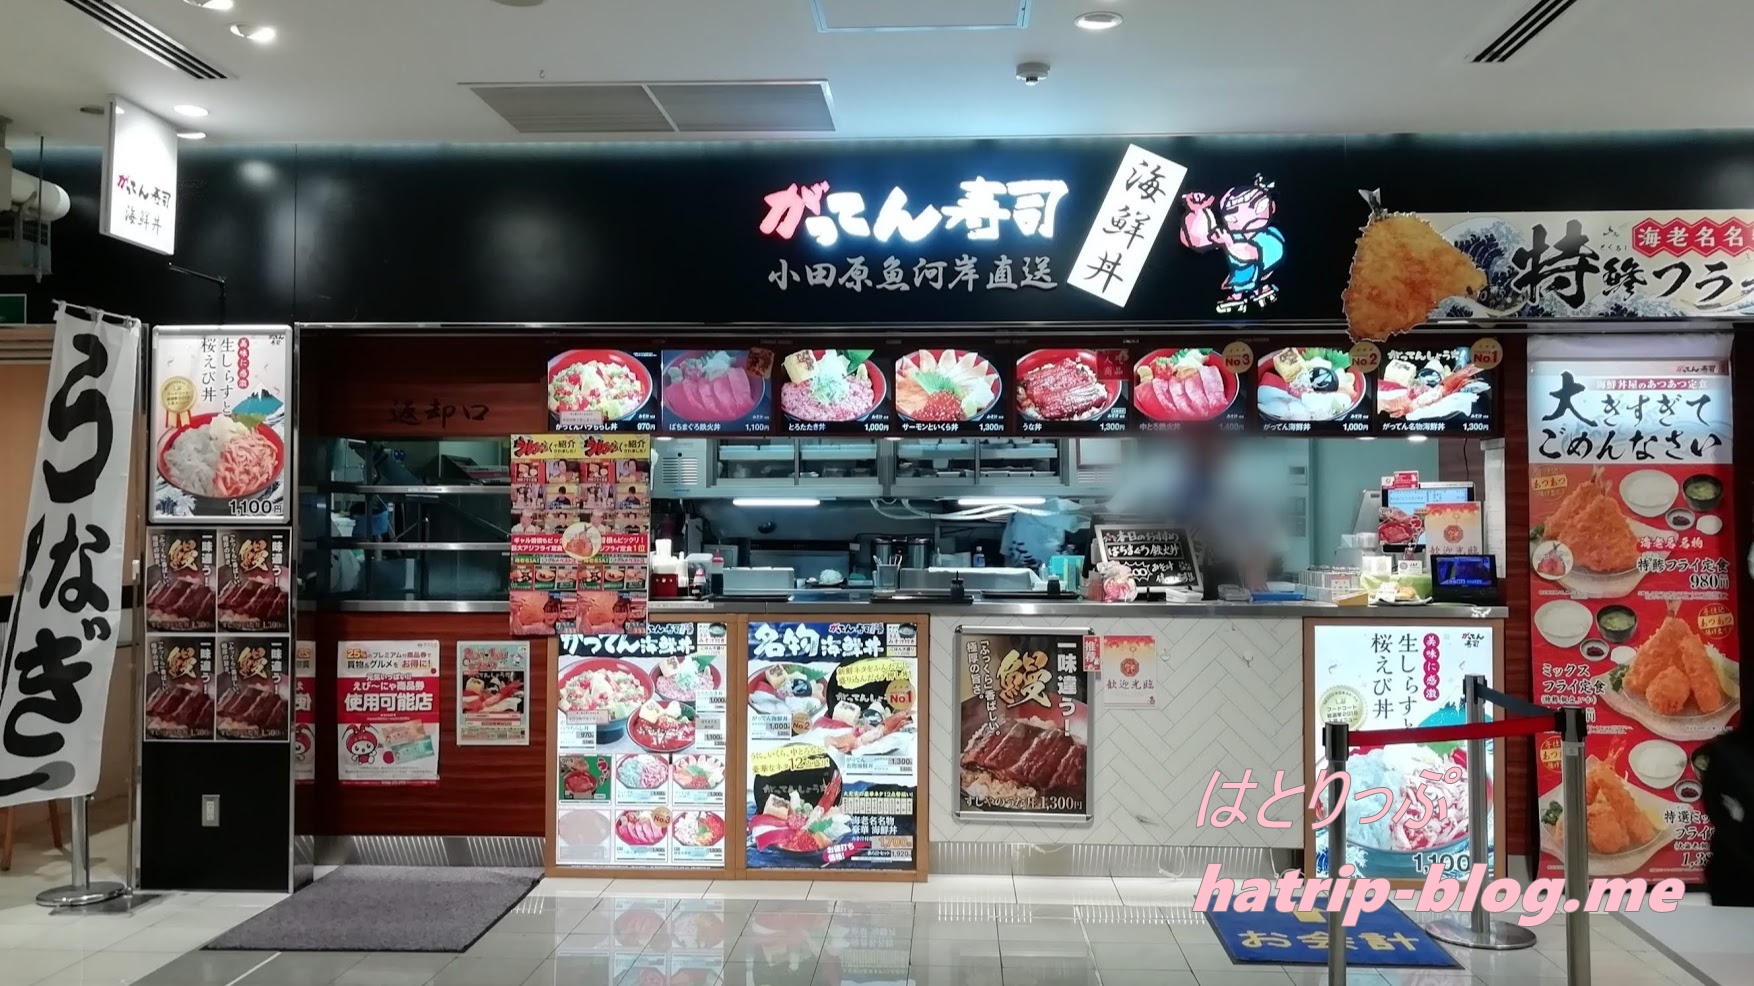 東名高速道路 海老名サービスエリア 上り フードコート 海鮮丼 がってん寿司